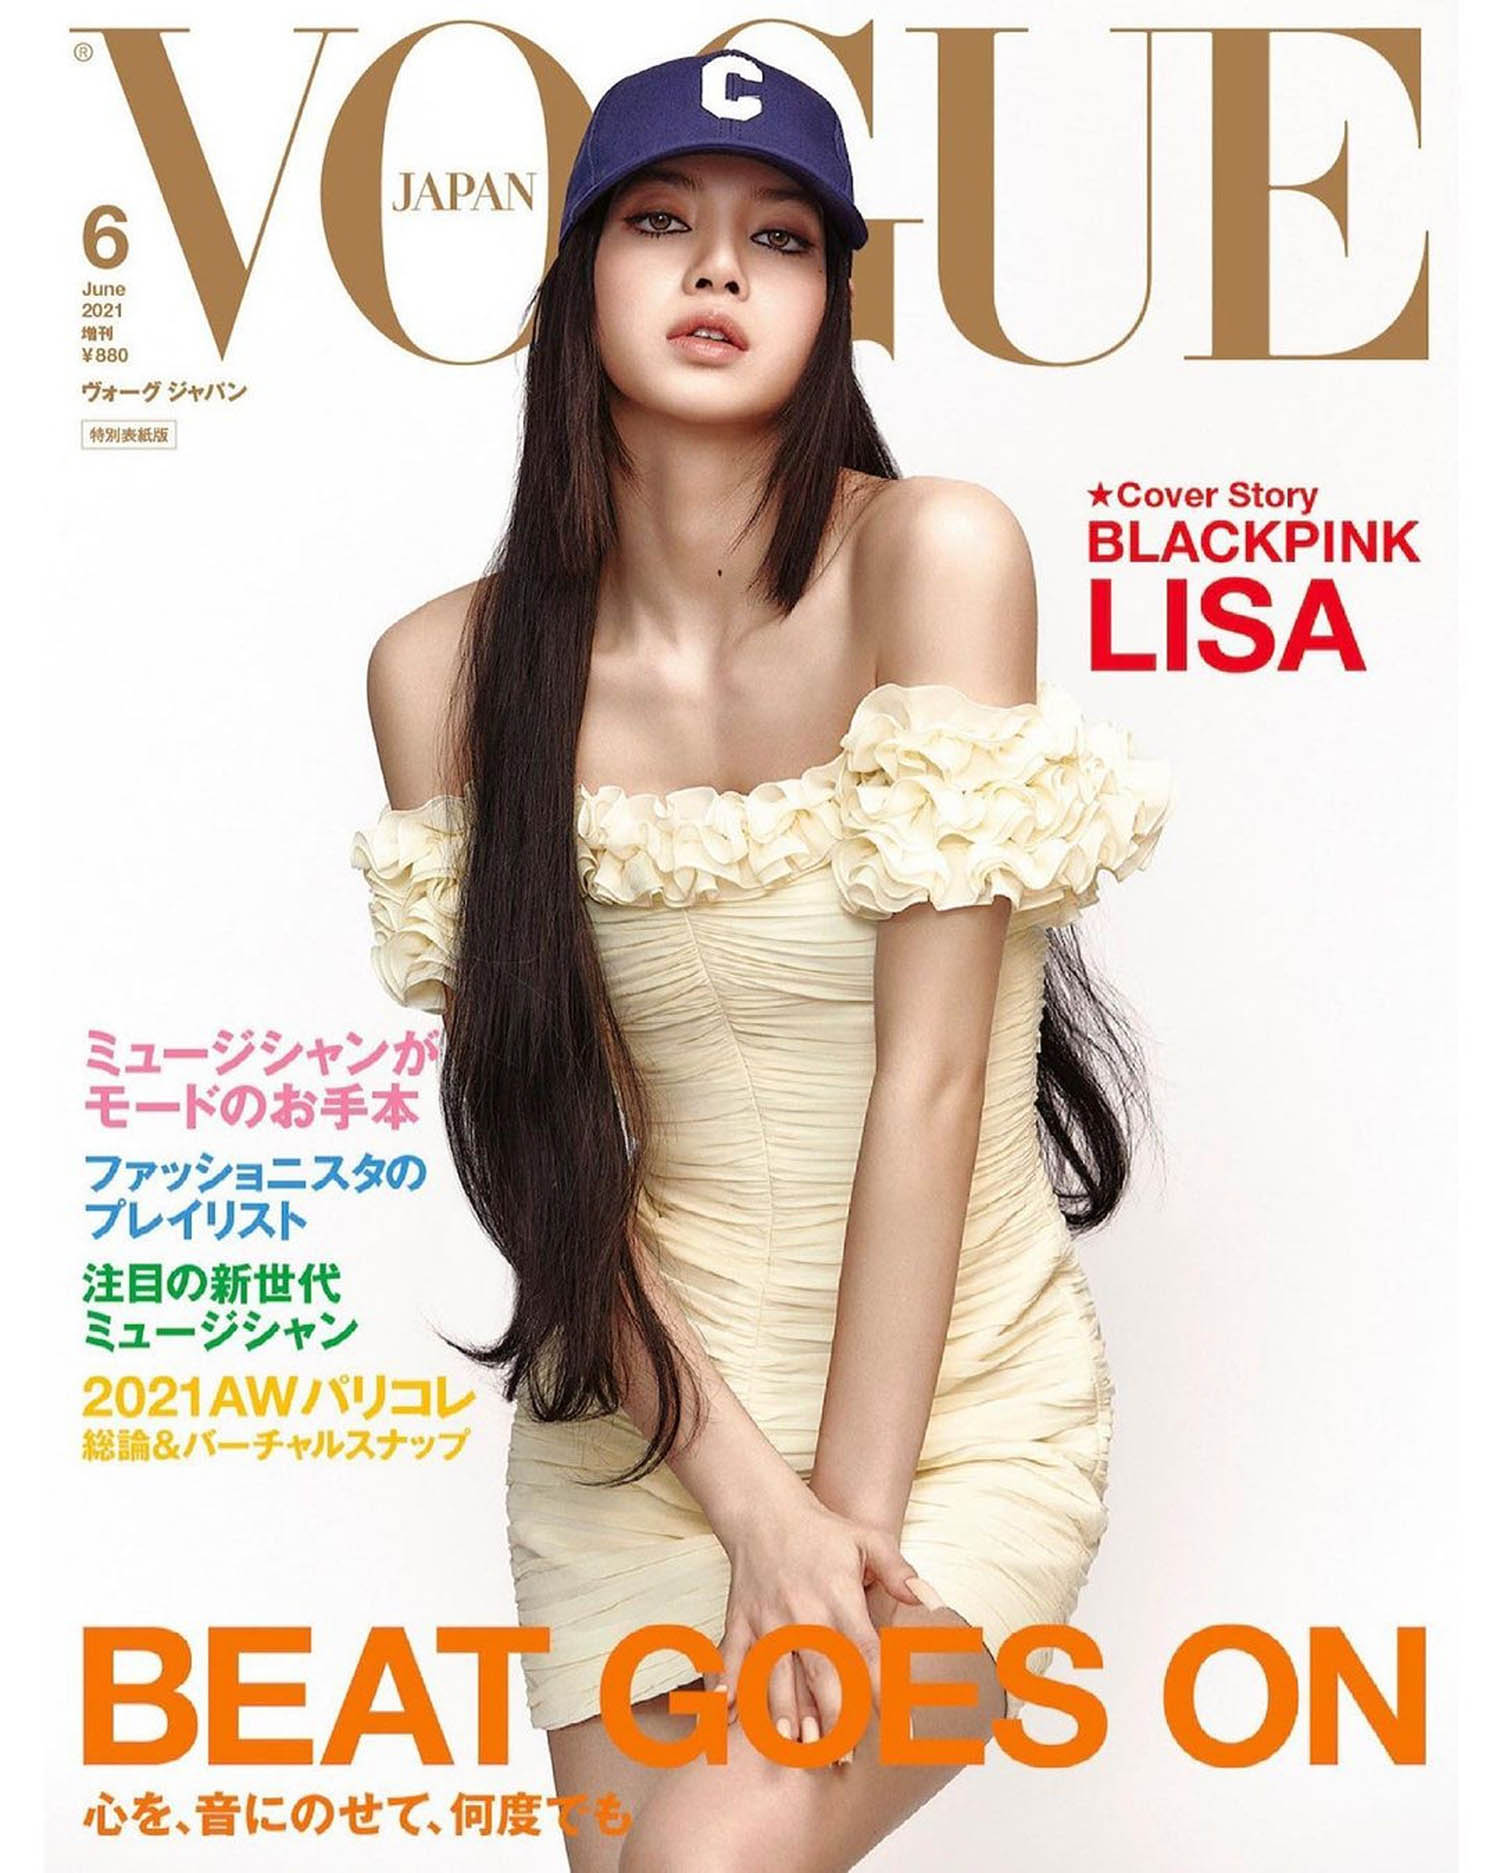 Blackpink’s Lisa covers Vogue Japan June 2021 by Kim Hee June